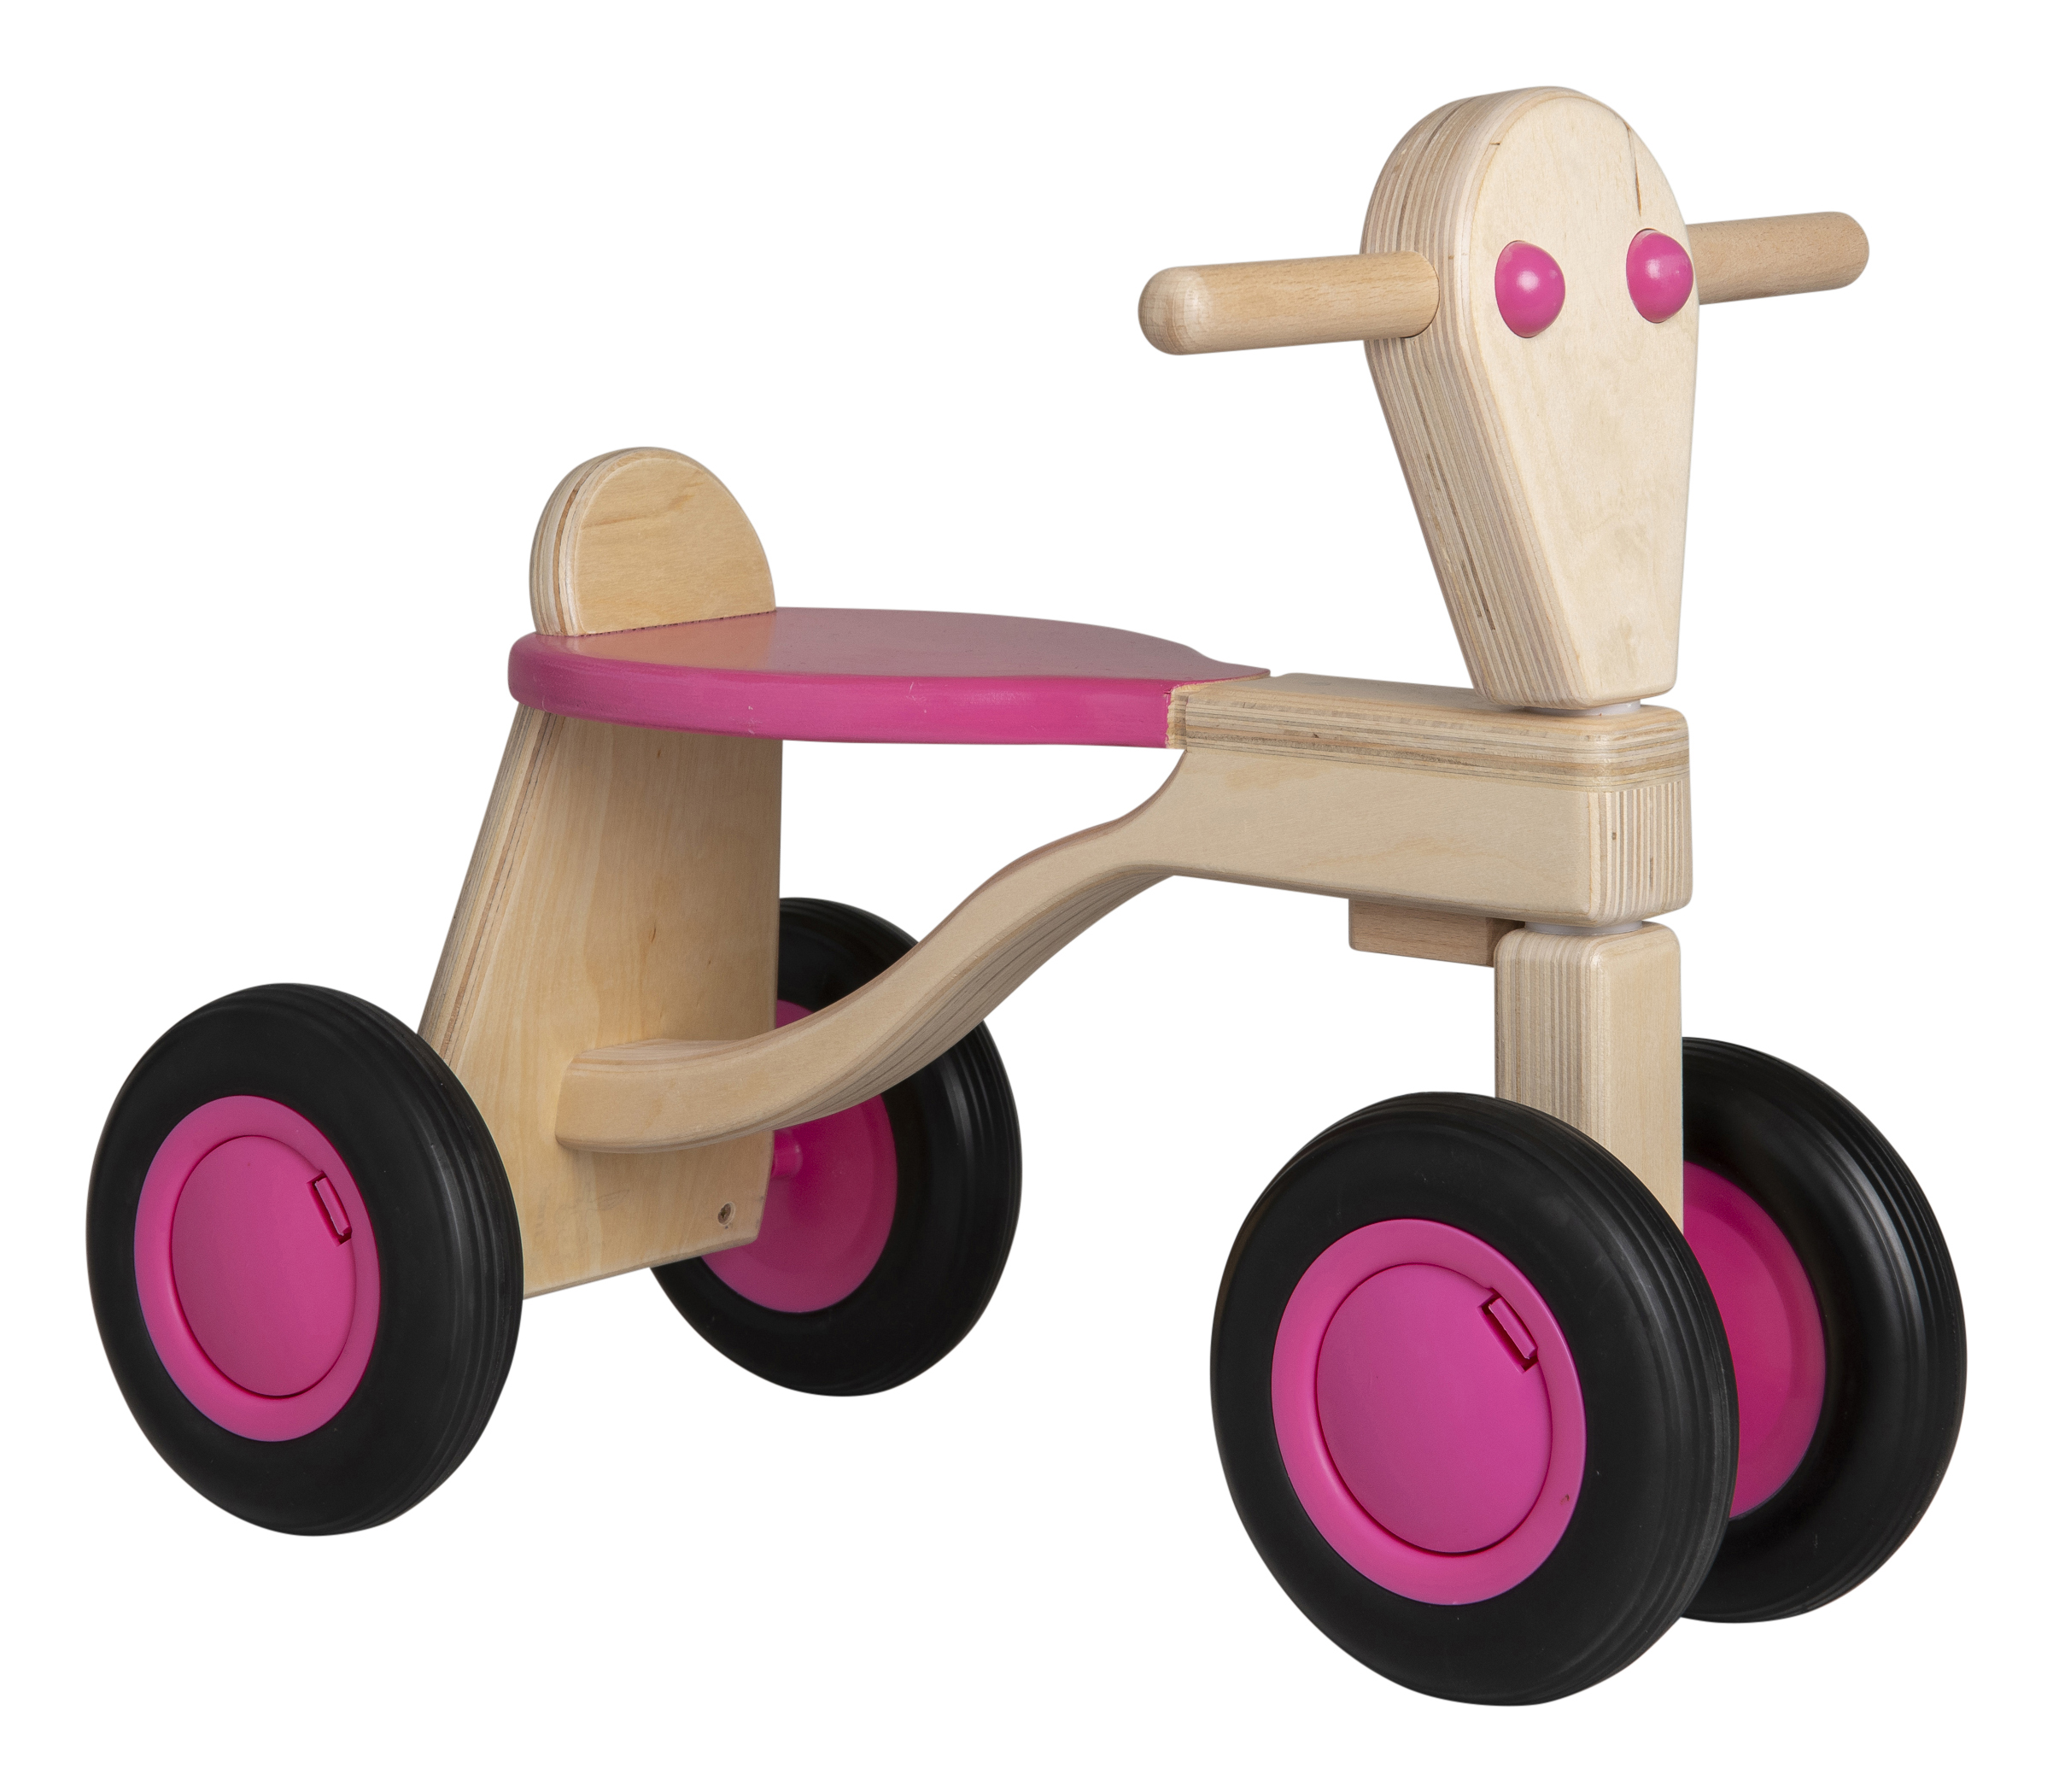 Moderator Oprichter kussen Van Dijk Toys houten loopfiets roze - berken